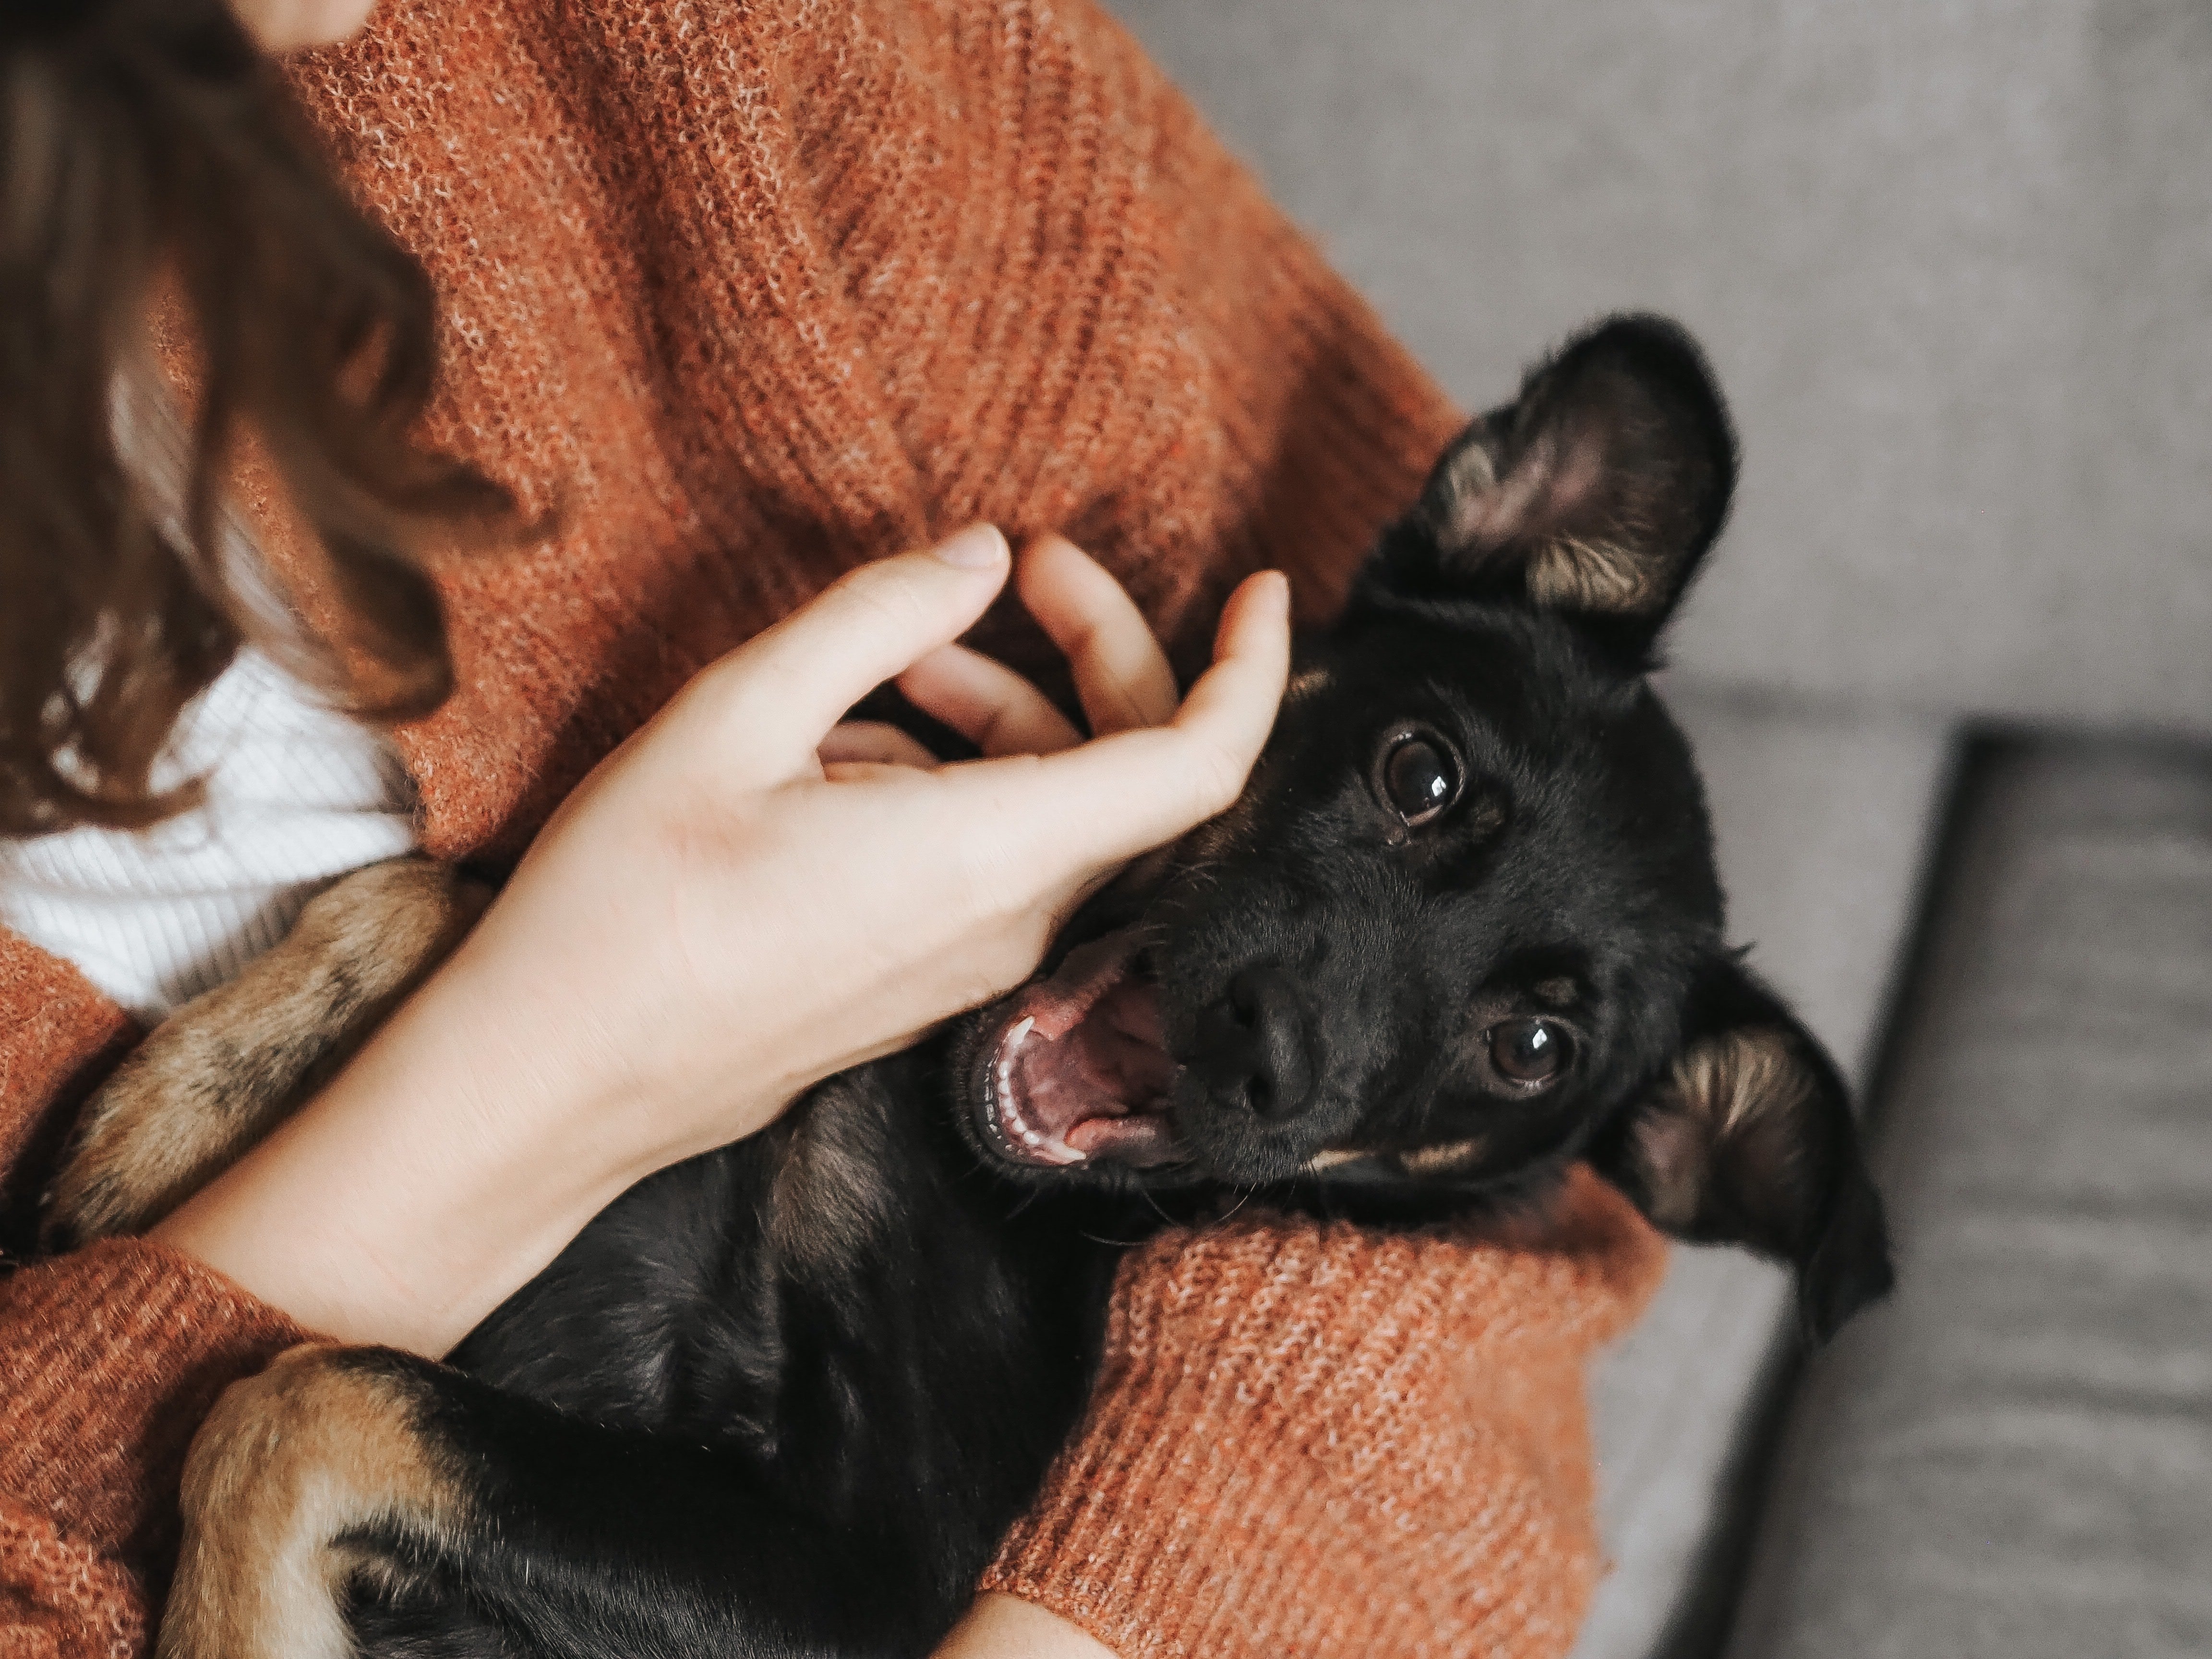 Tenir una mascota millora el nostre benestar emocional